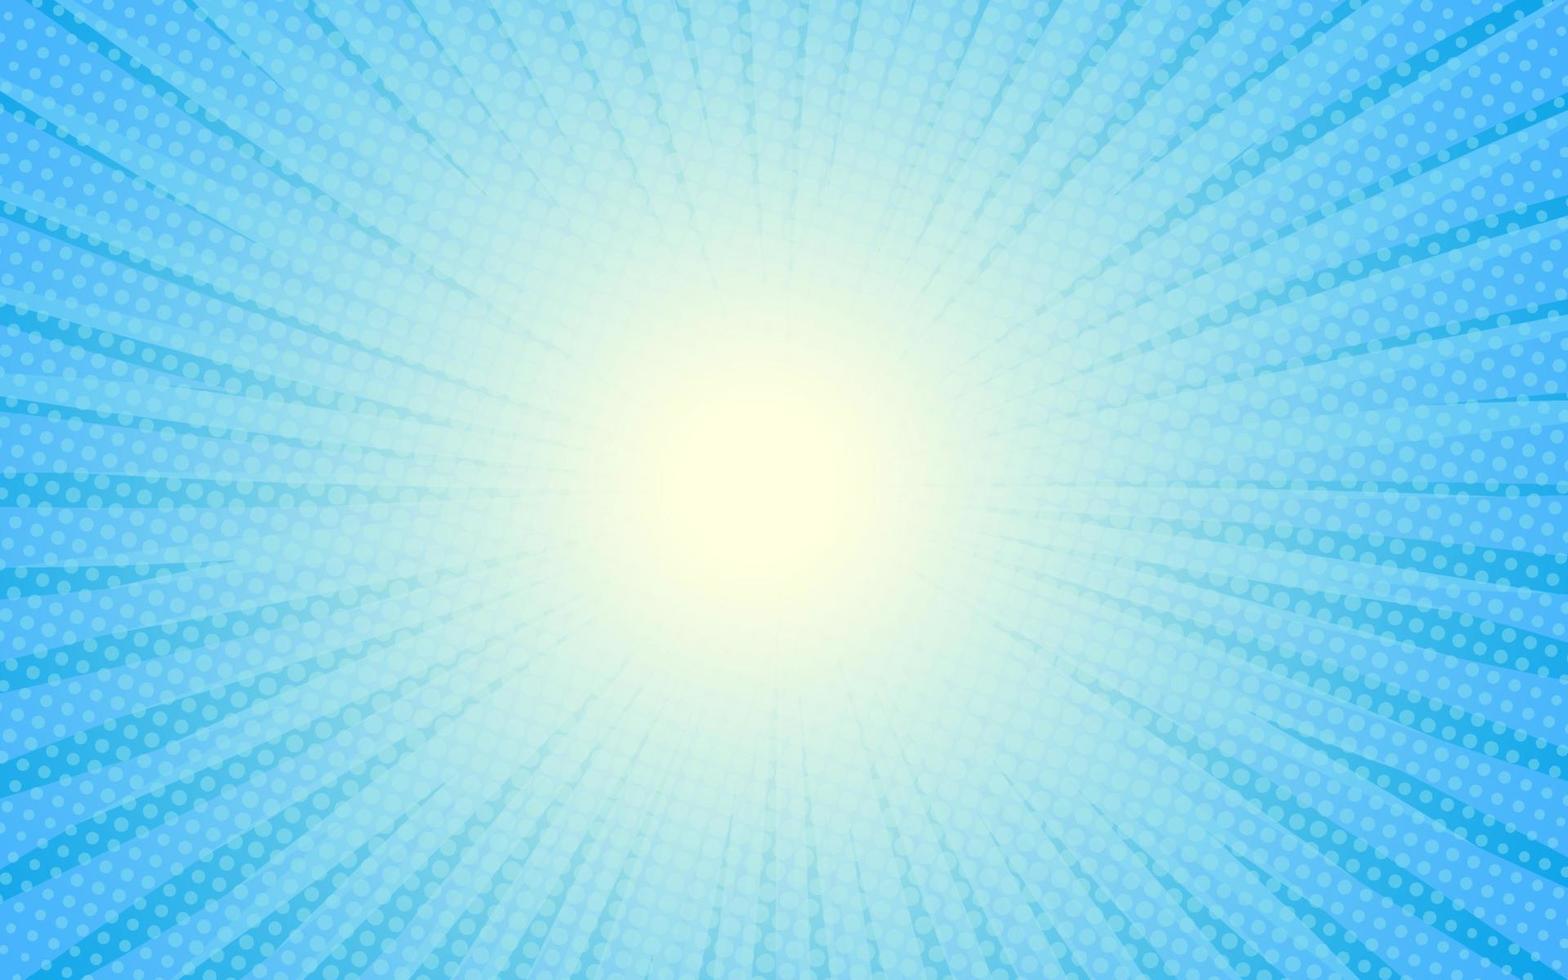 Sonnenstrahlen Retro-Vintage-Stil auf blauem Hintergrund, Comic-Muster mit Starburst und Halbton. Cartoon-Retro-Sunburst-Effekt mit Punkten. Strahlen. Sommer-Banner-Vektor-Illustration. vektor